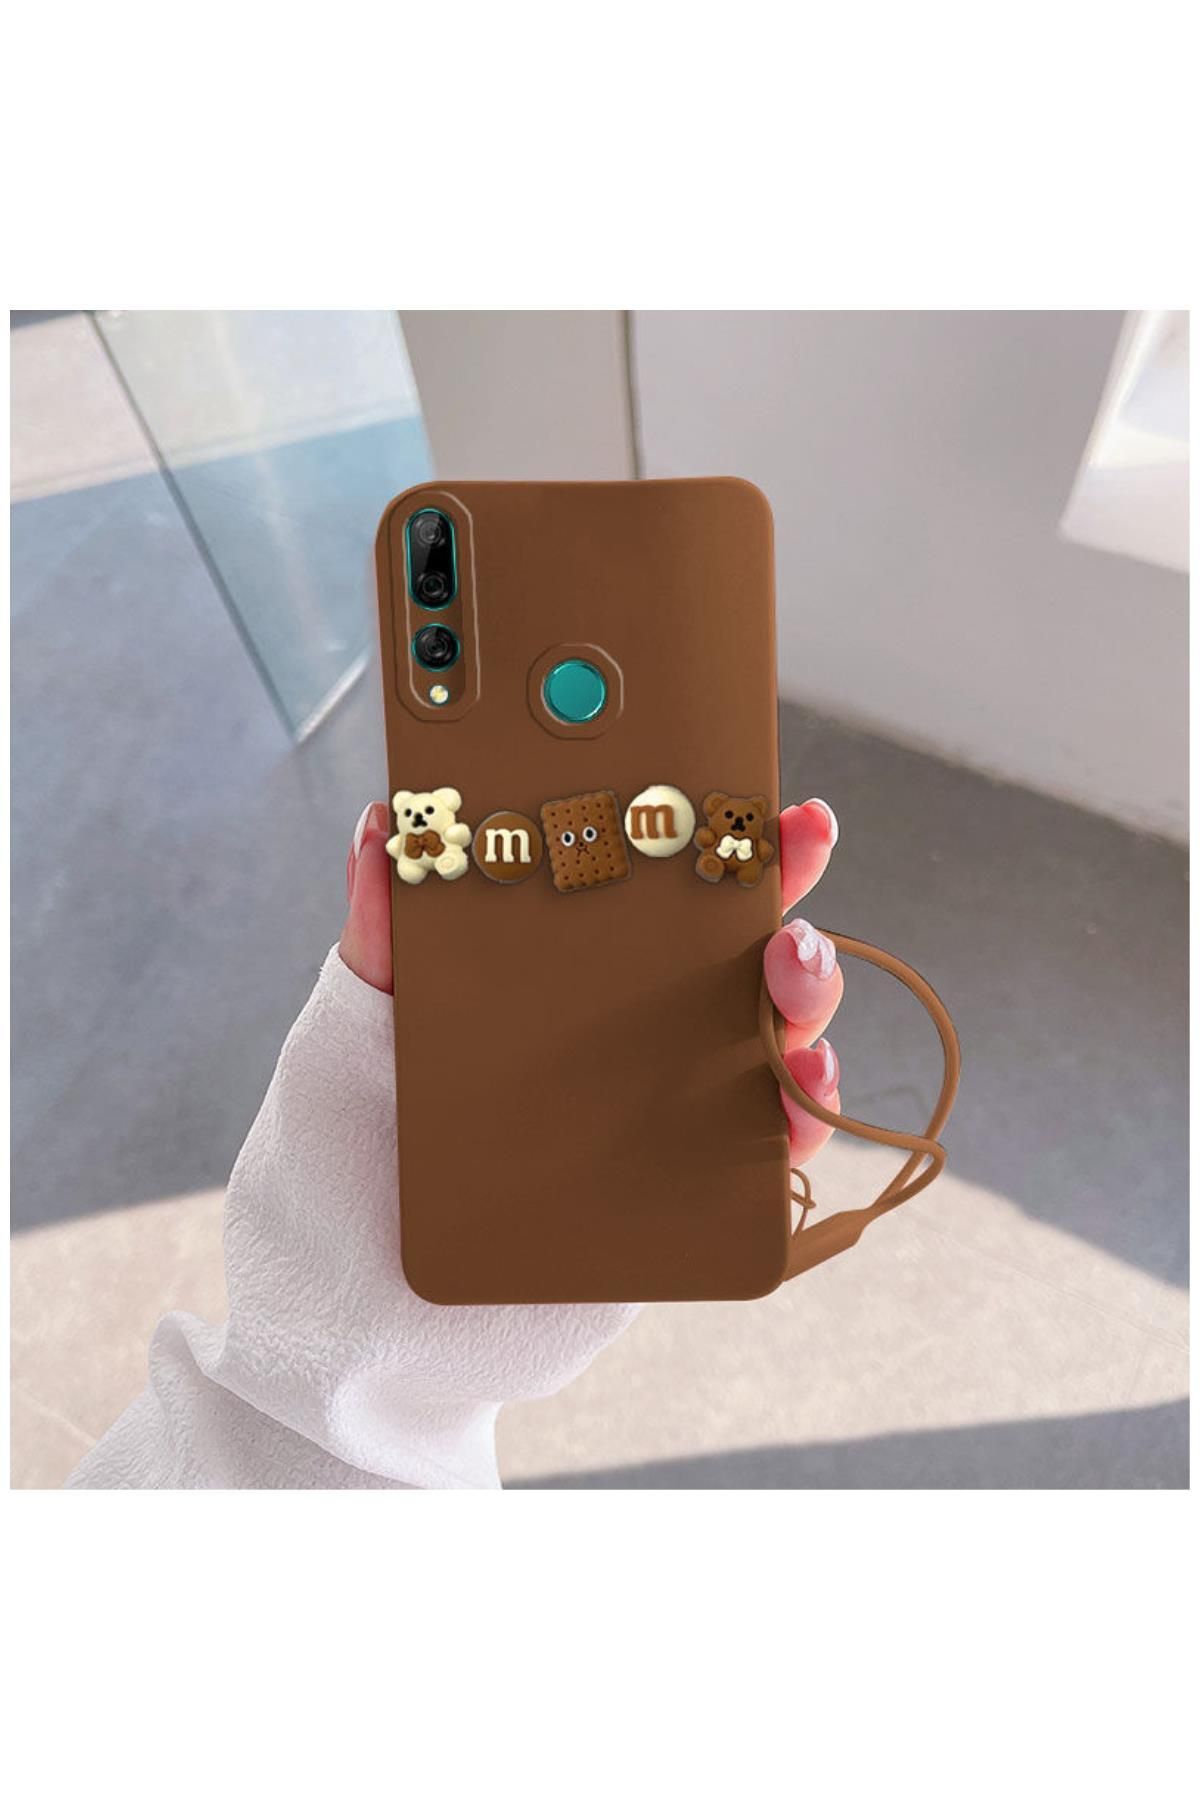 Zebana Huawei Y9 Prime 2019 Uyumlu Kılıf Love Bear Silikon Kılıf Kahverengi